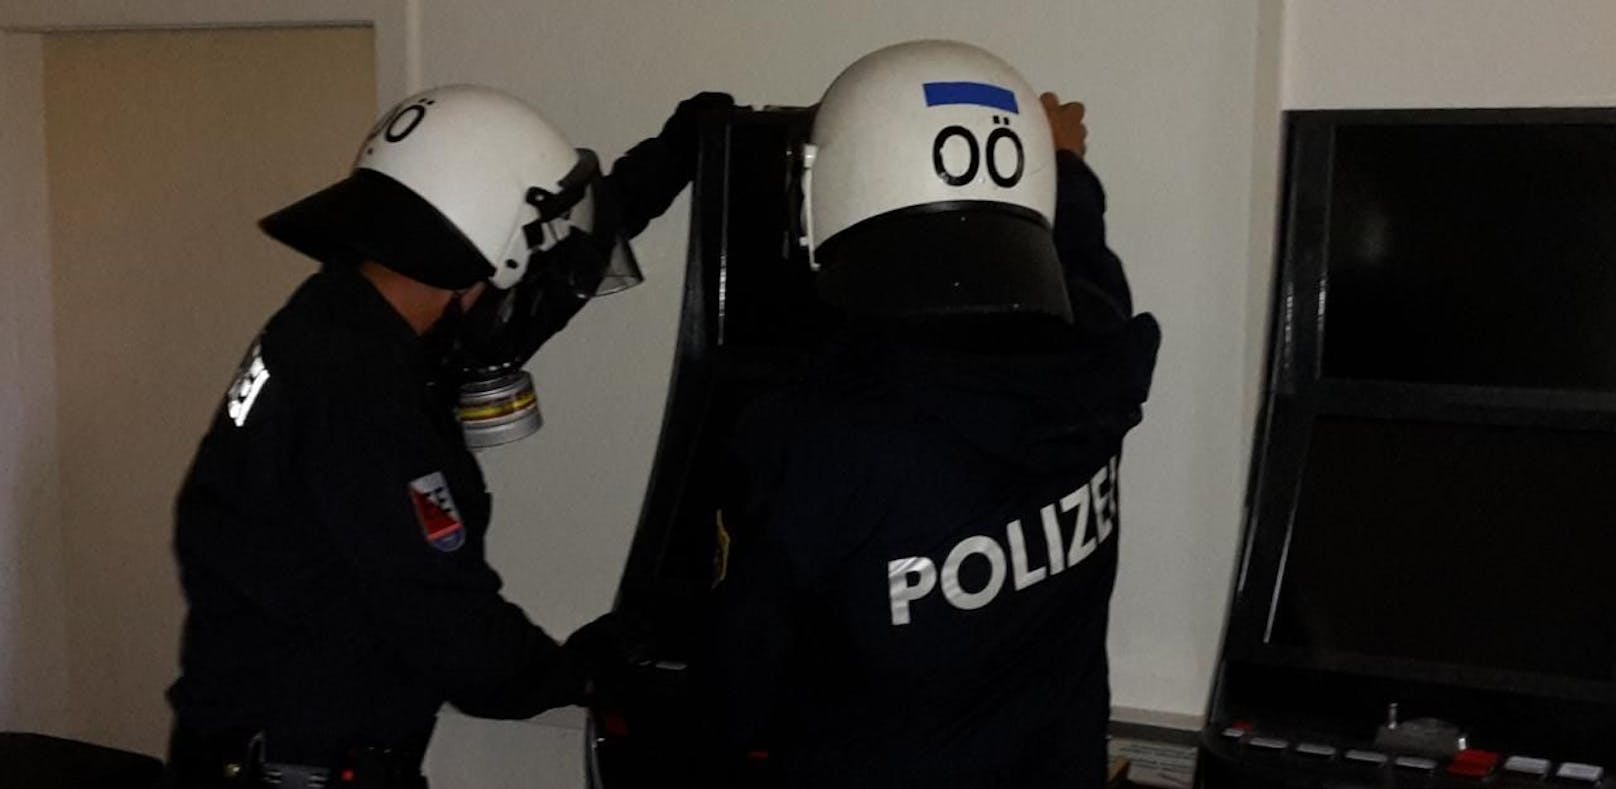 Reizgas-Falle aufgebaut, um Polizei zu stoppen